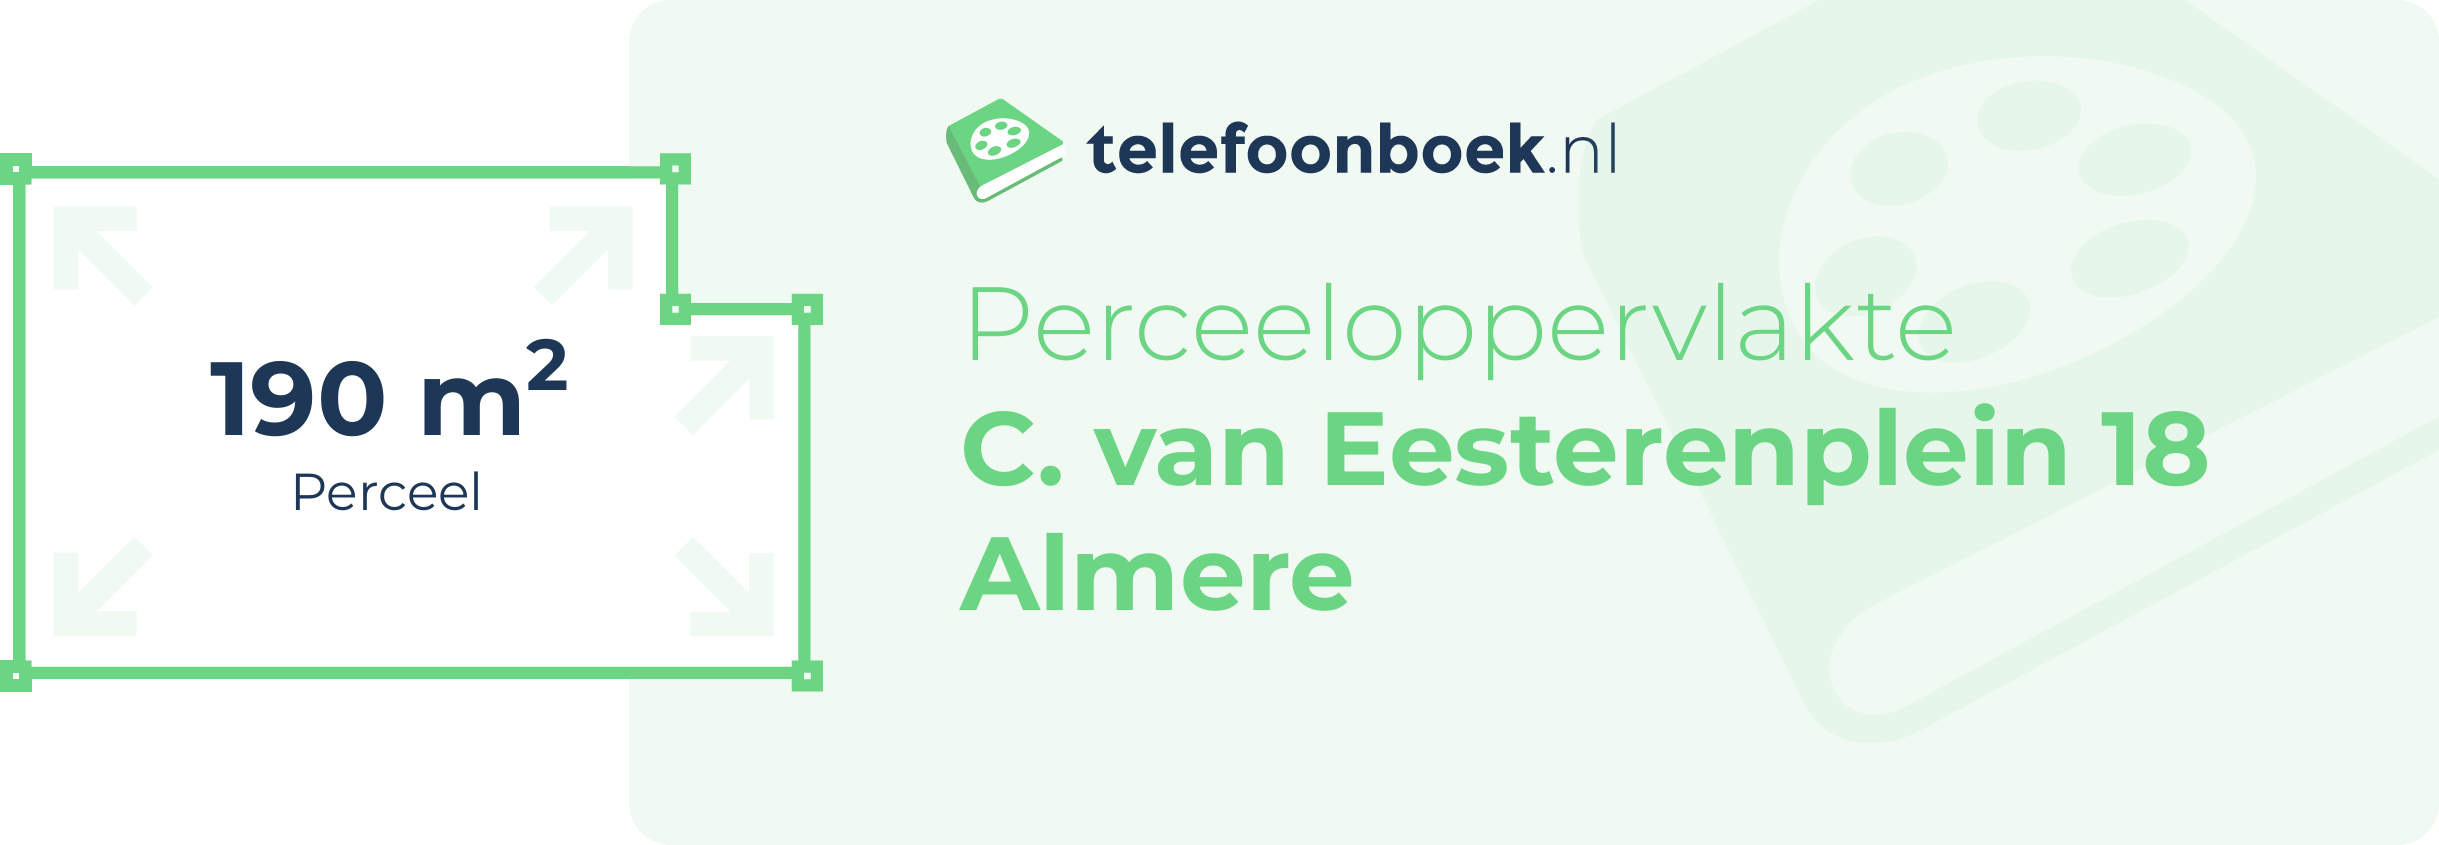 Perceeloppervlakte C. Van Eesterenplein 18 Almere